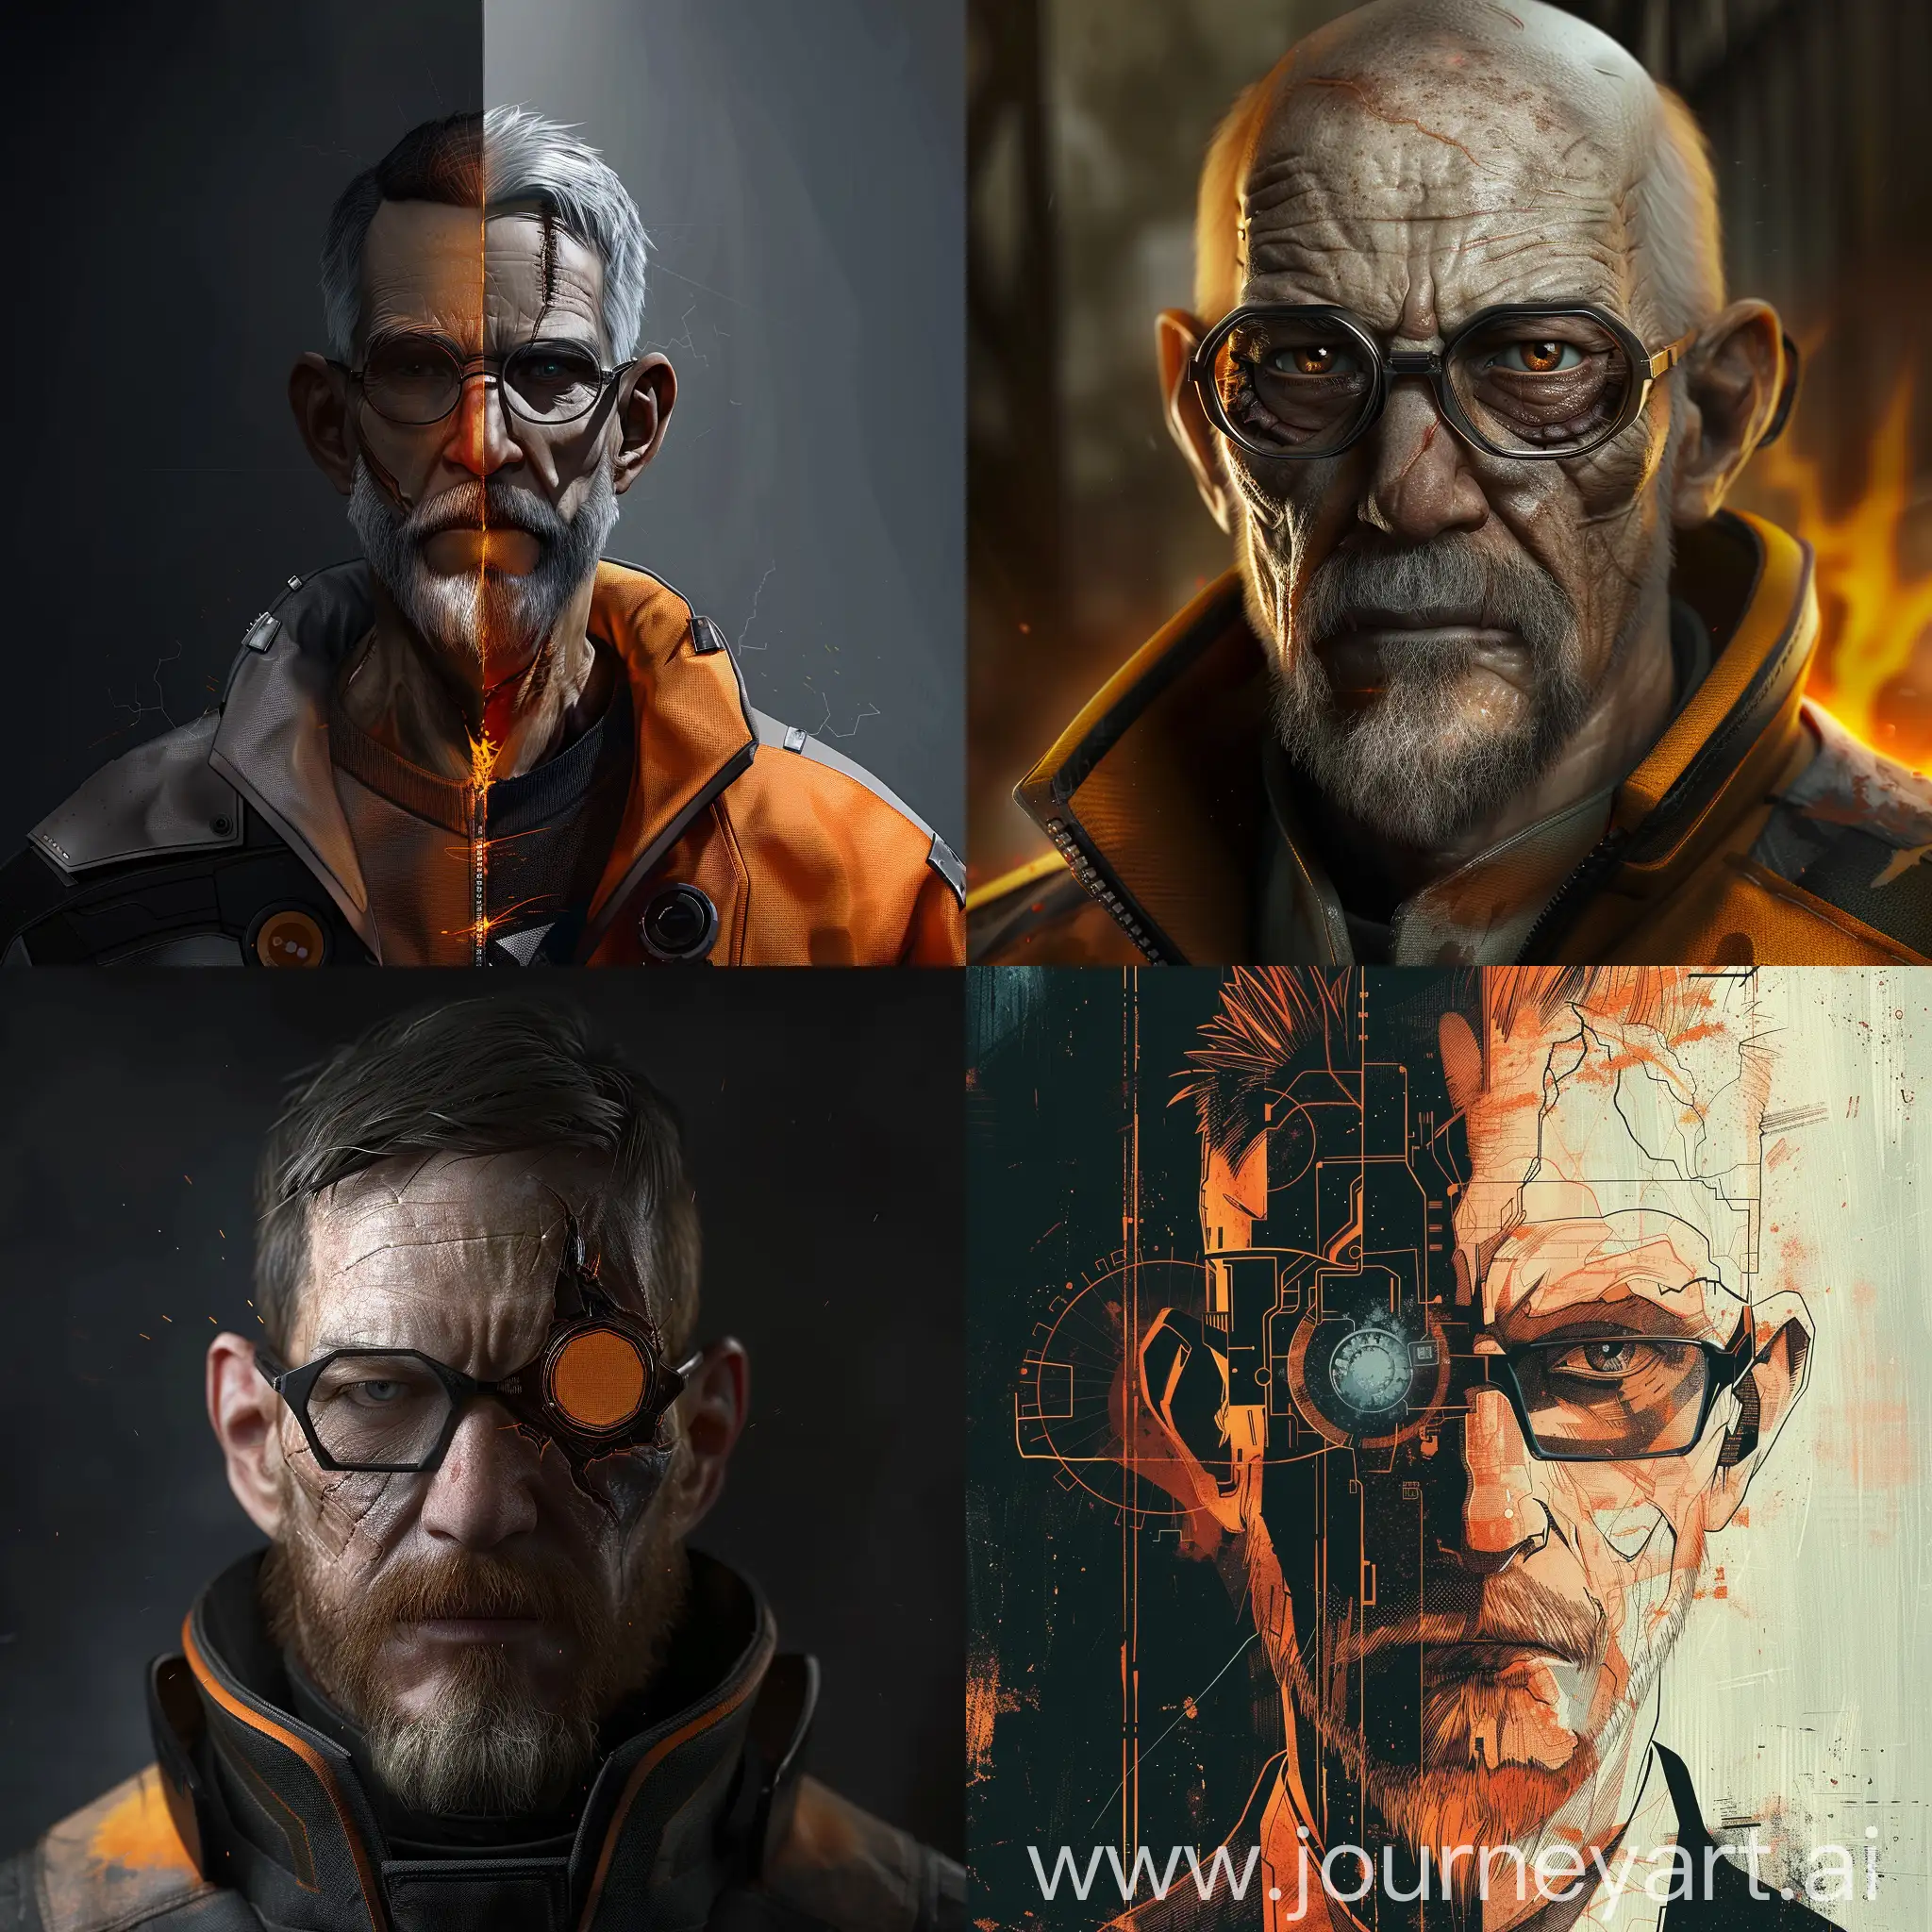 Gordon-Freeman-Half-Life-Art-Futuristic-SciFi-Hero-Portrait